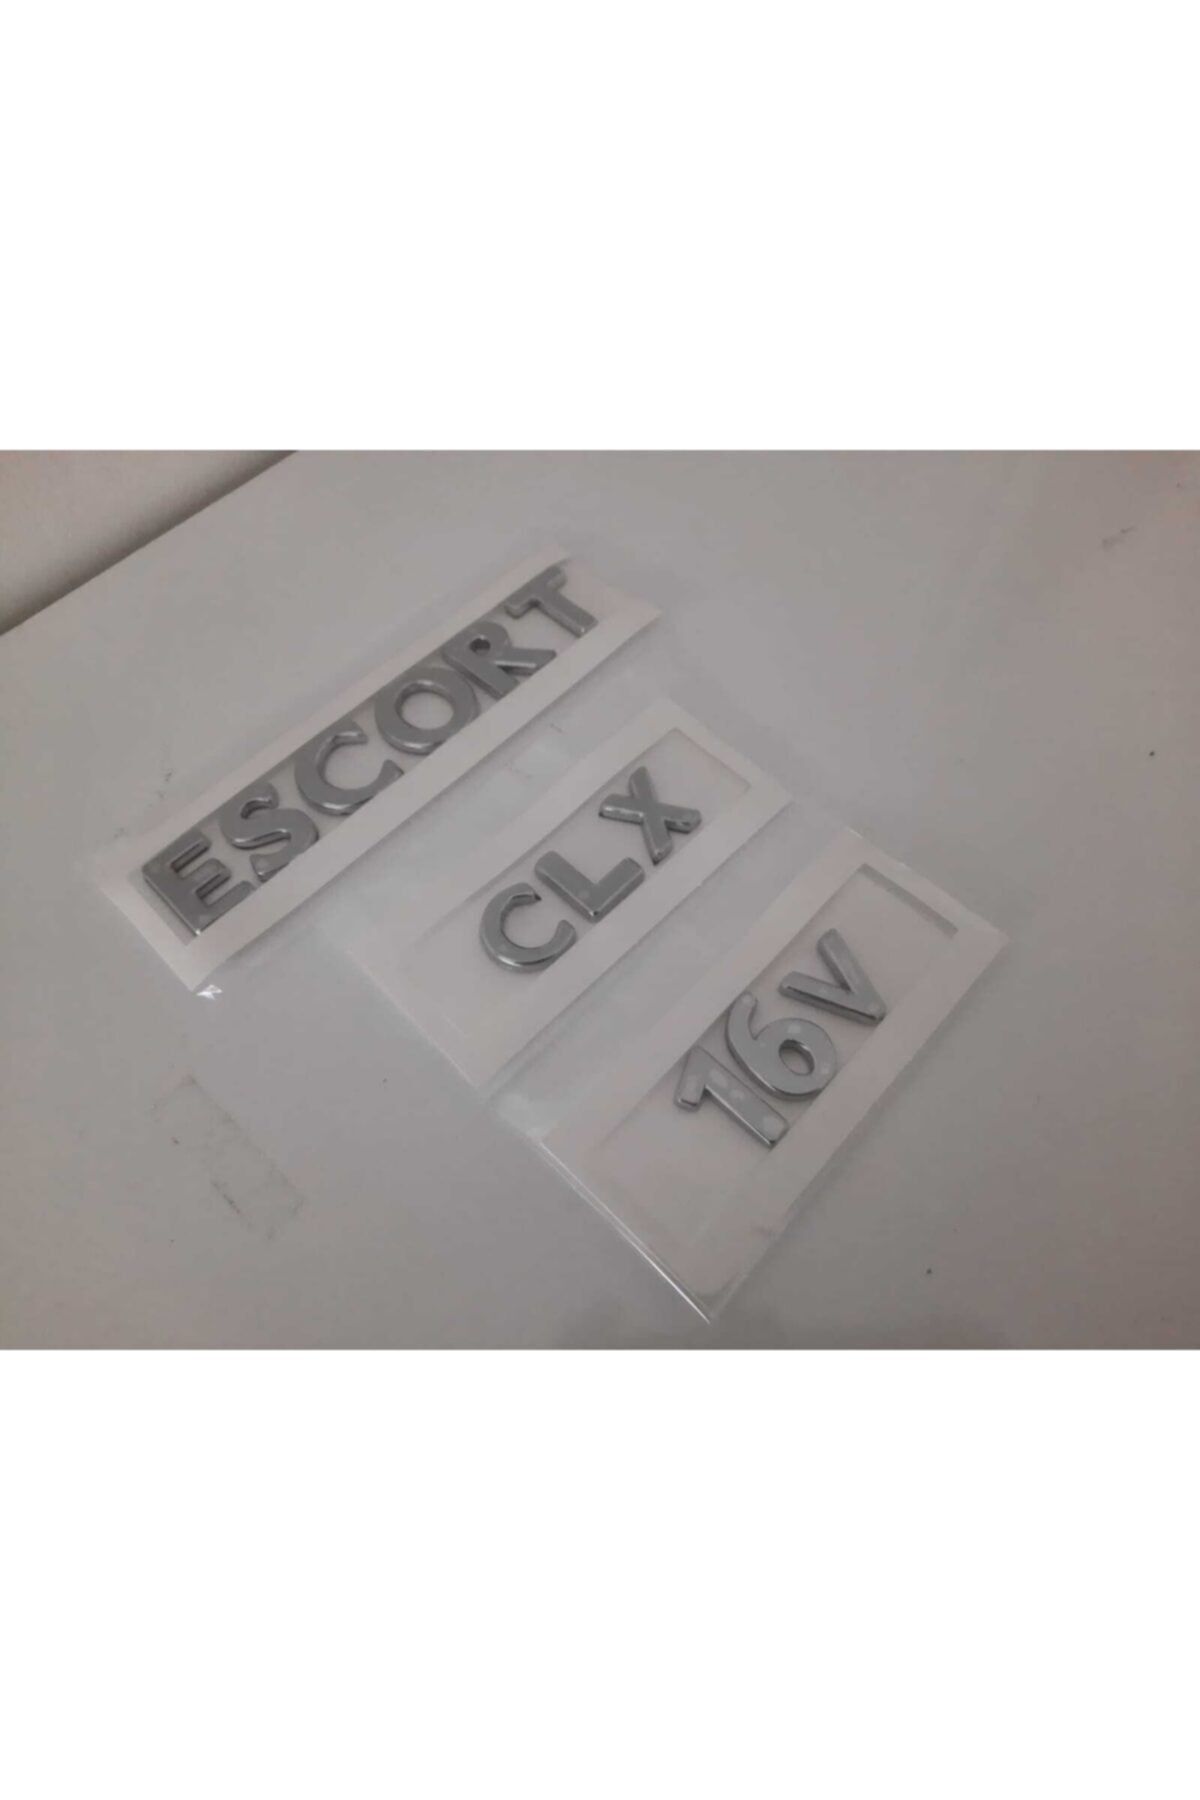 Escort Clx 16v Yazı-3 Adet Takım-yüksek Kalite-